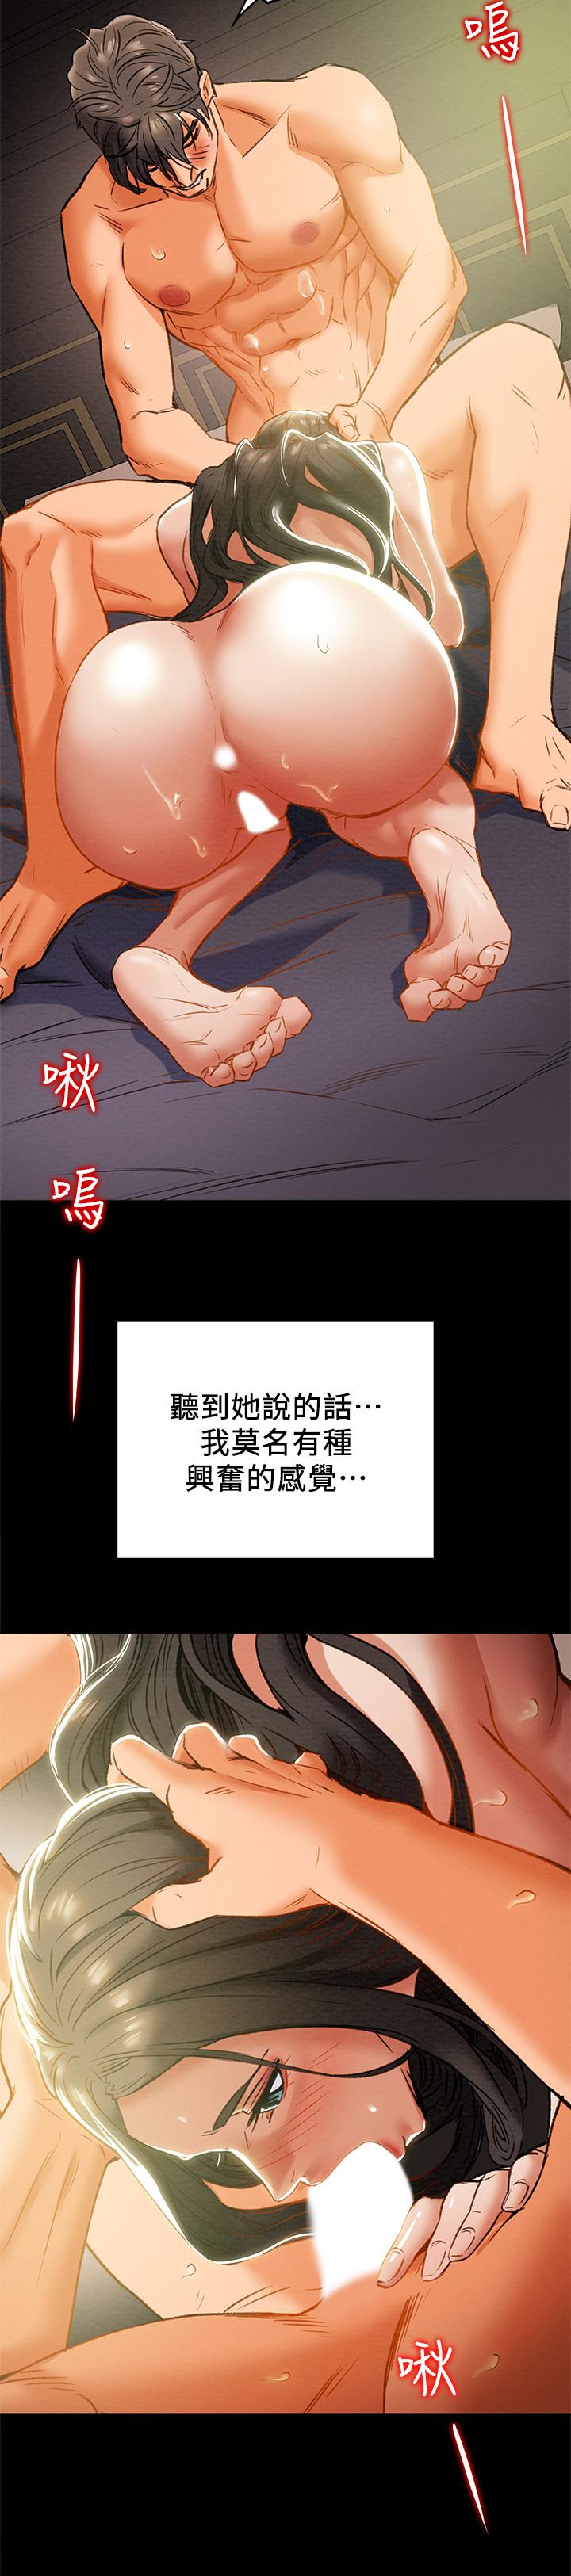 韩国污漫画 純情女攻略計劃 第24话-沉迷于违背道德 25